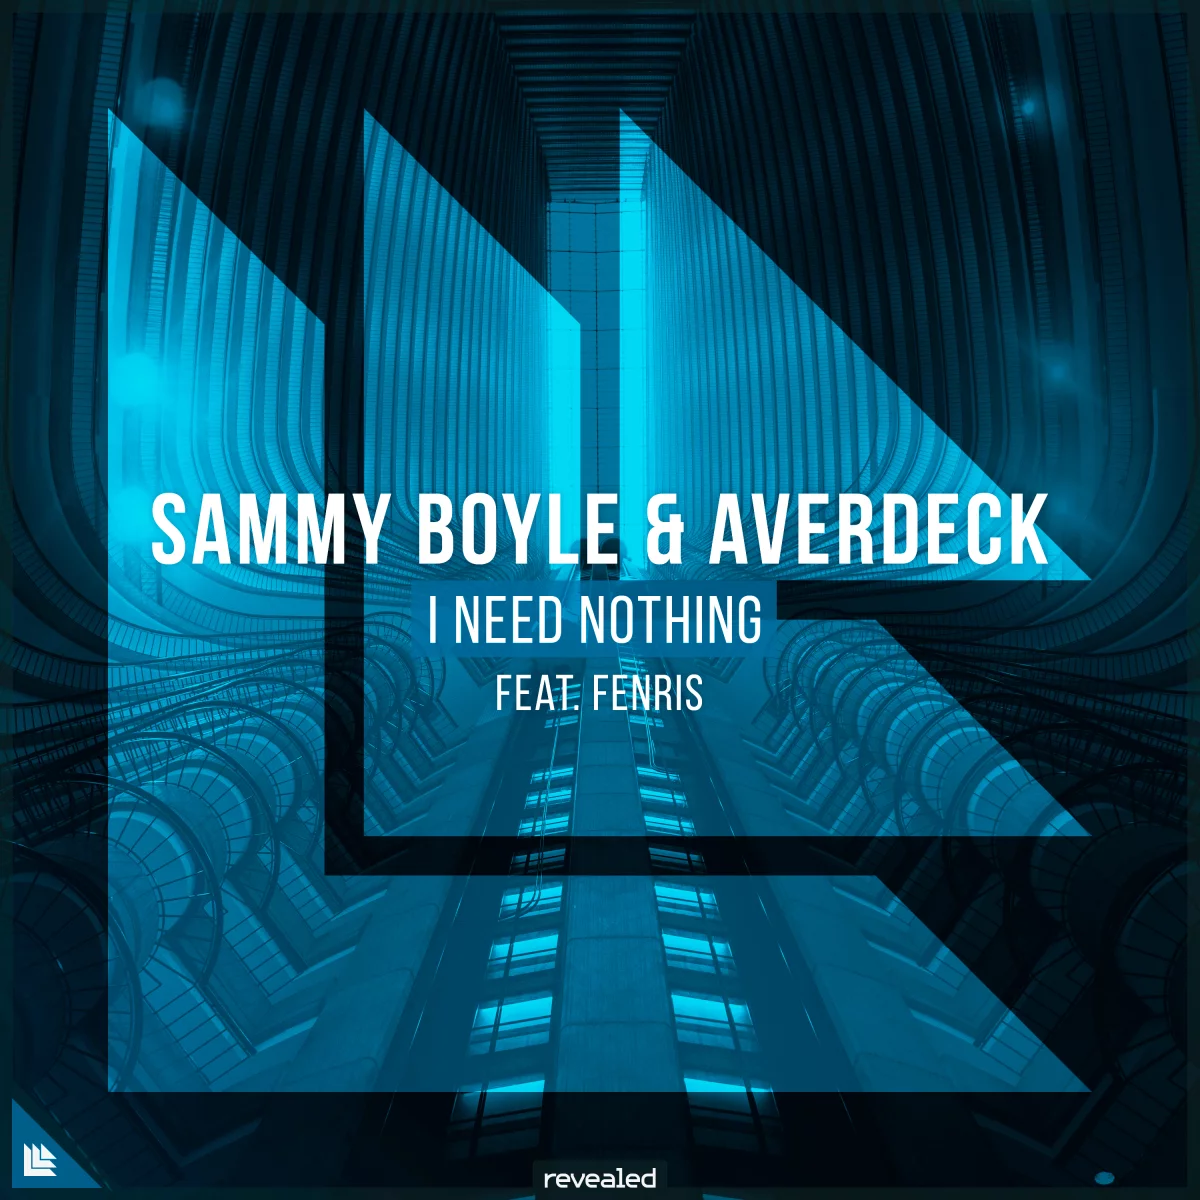 I Need Nothing - Sammy Boyle⁠ Averdeck⁠ Fenris⁠ 